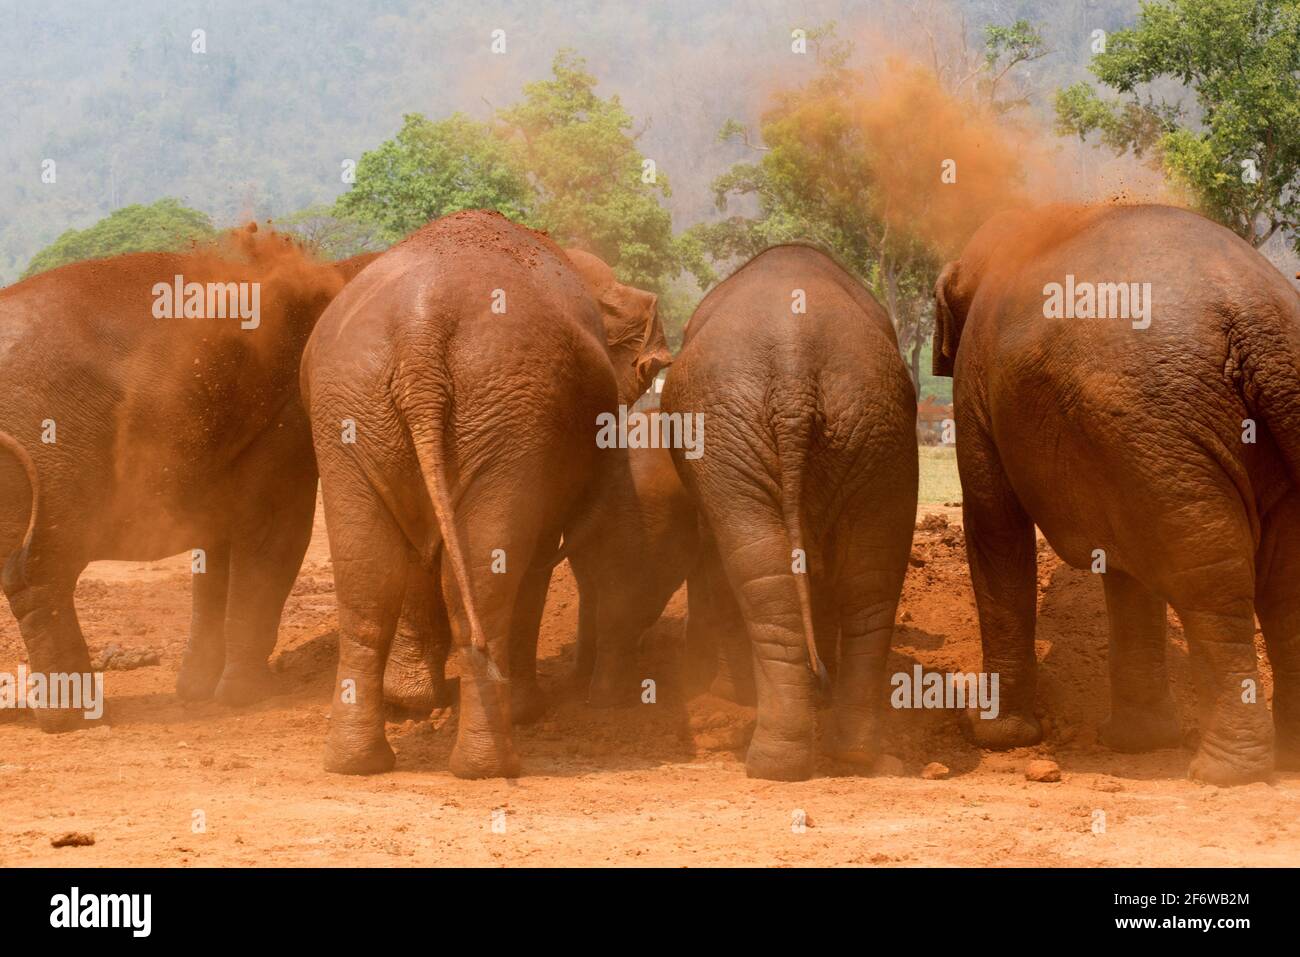 Éléphant asiatique ou asiatique (Elepha maximus) prenant un bain de boue. Chiang Mai, Thaïlande. Banque D'Images